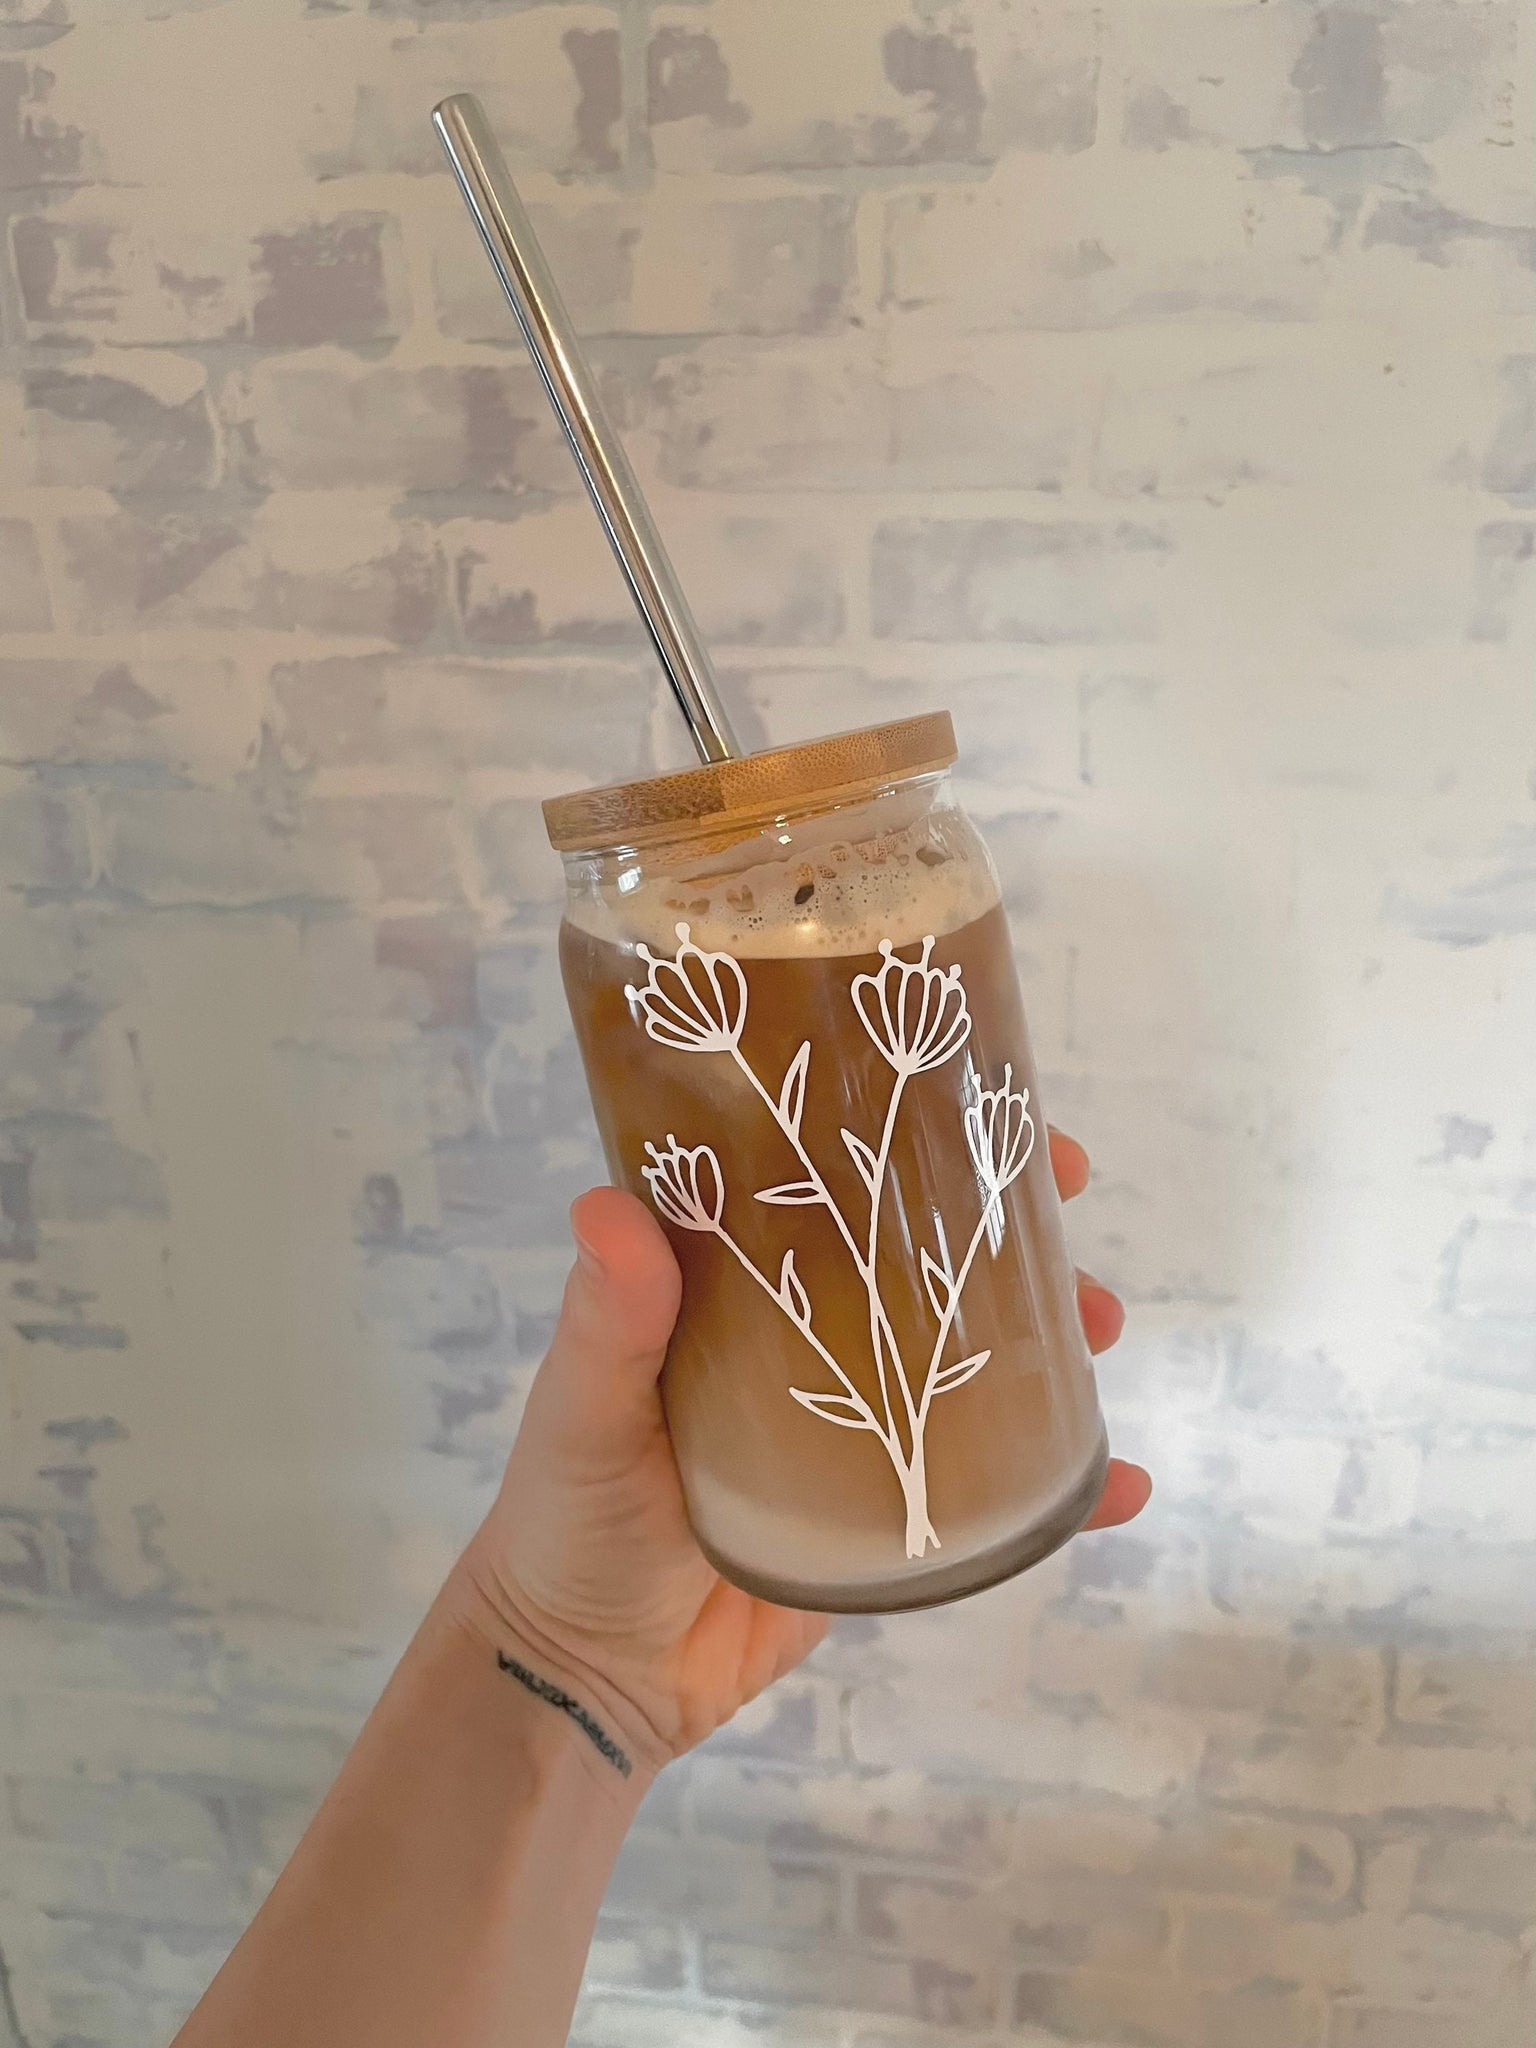 Iced Coffee Glass Tumbler, Hand Crafted Coffee Mug